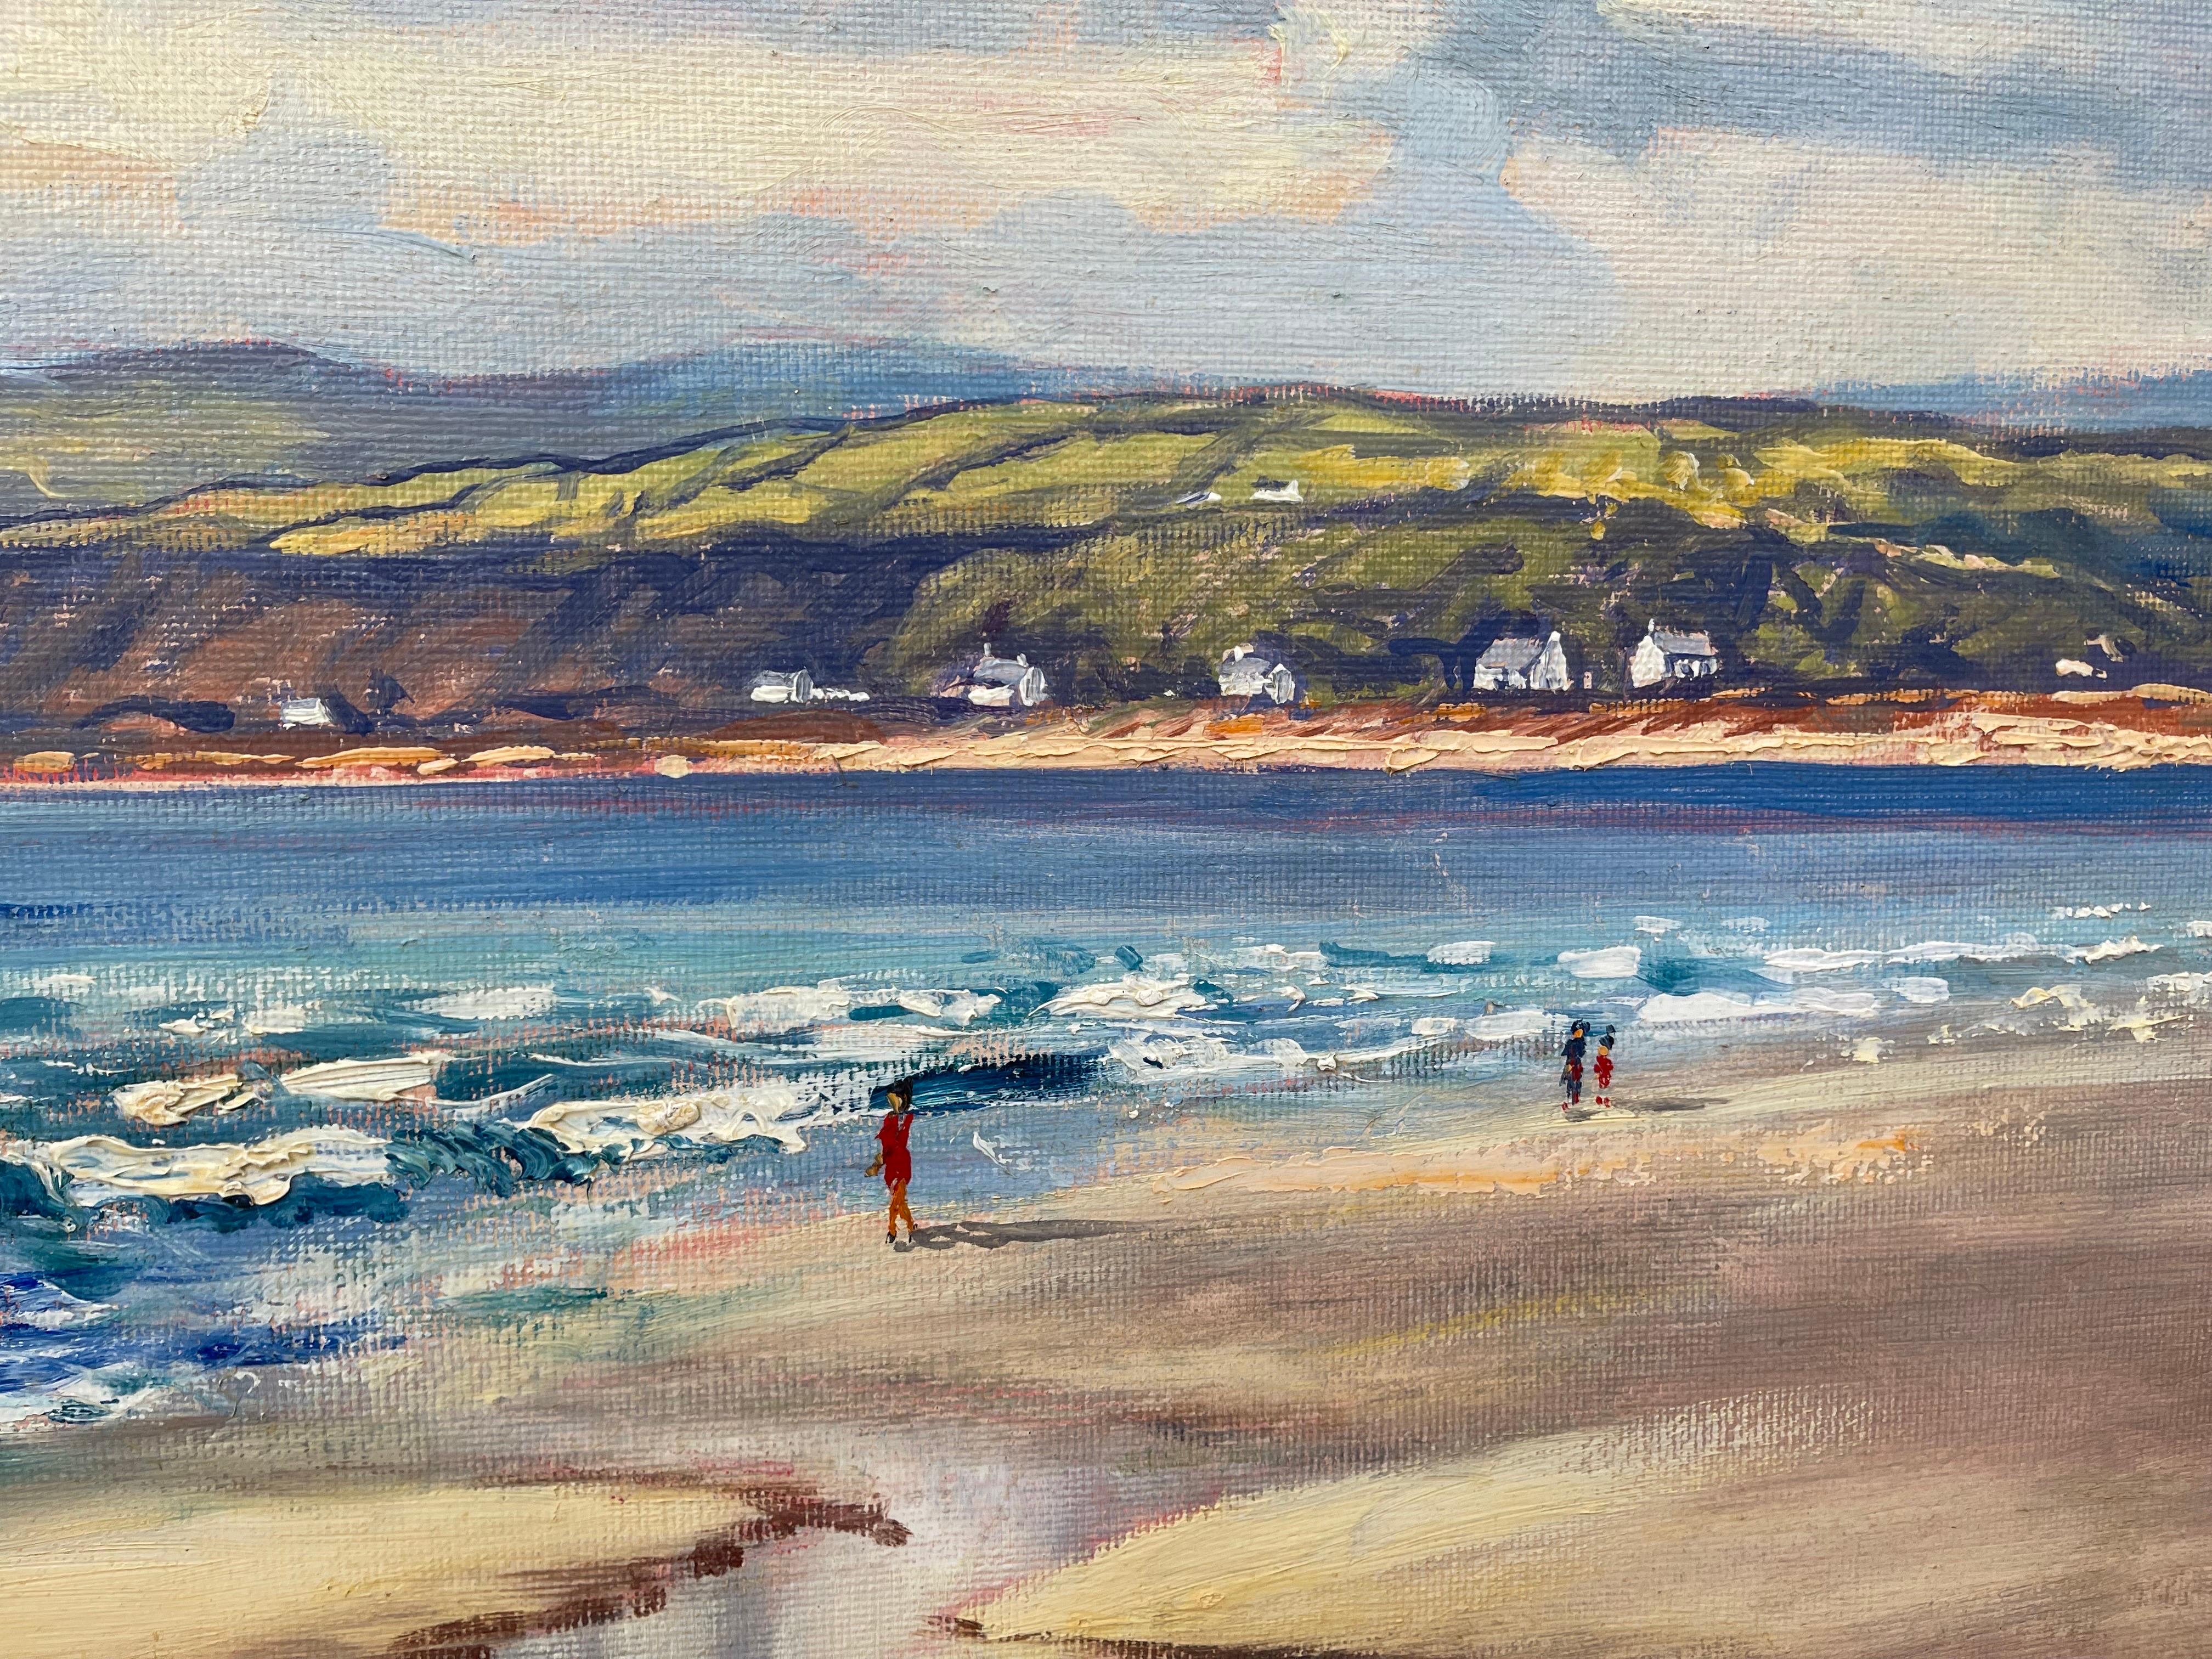 Peinture à l'huile originale d'une scène de plage à Fairhead, Irlande, par un artiste irlandais moderne - Réalisme Painting par William Henry Burns